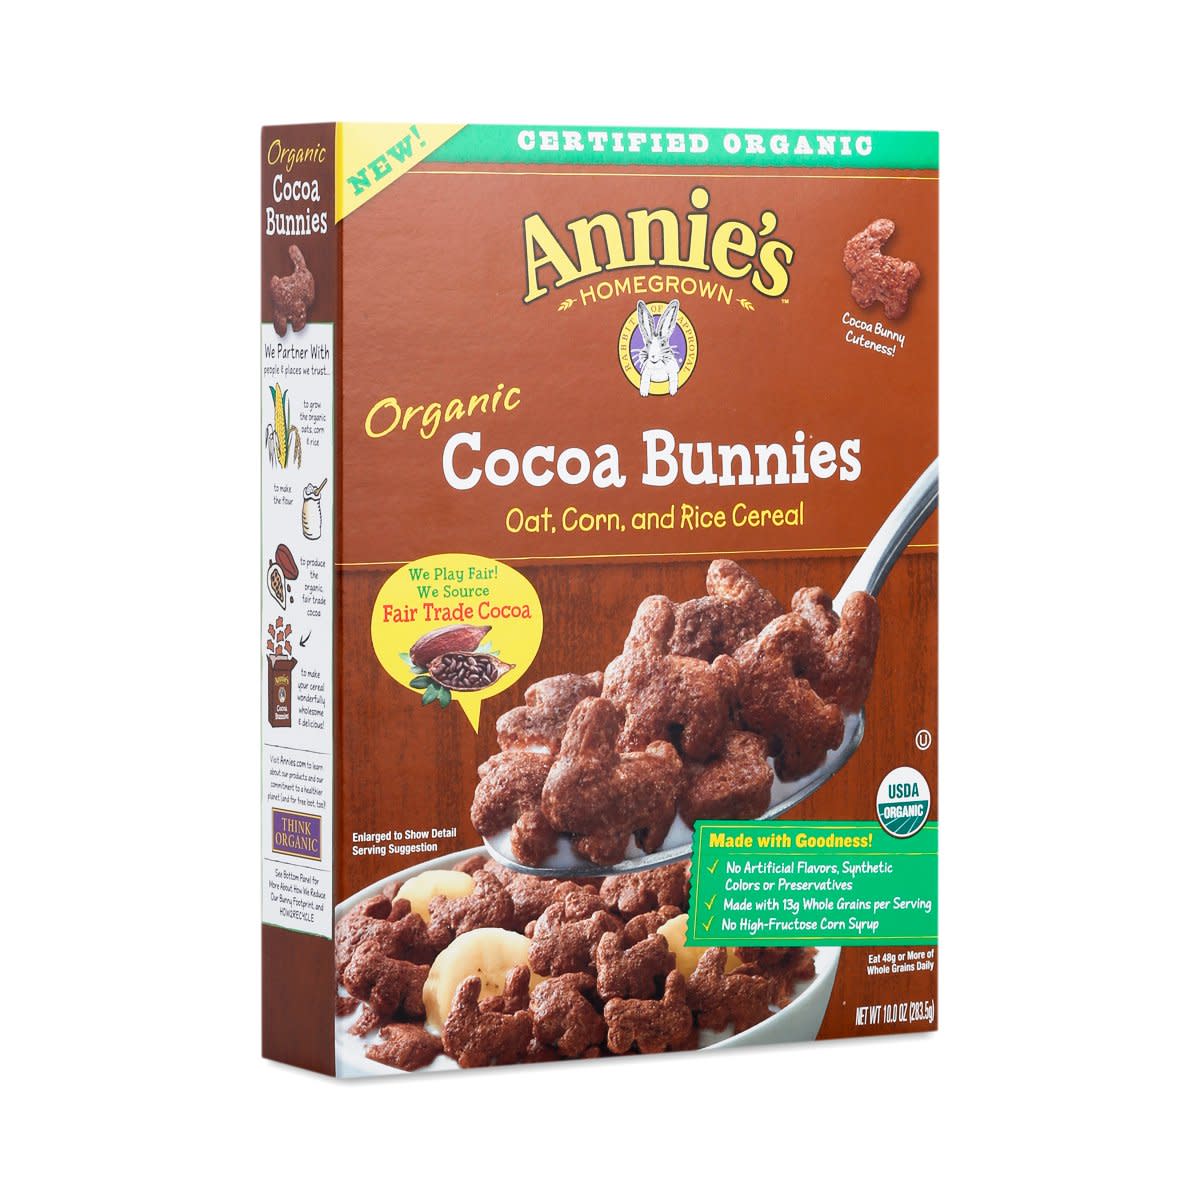 annie's homegrown cocoa bunnies